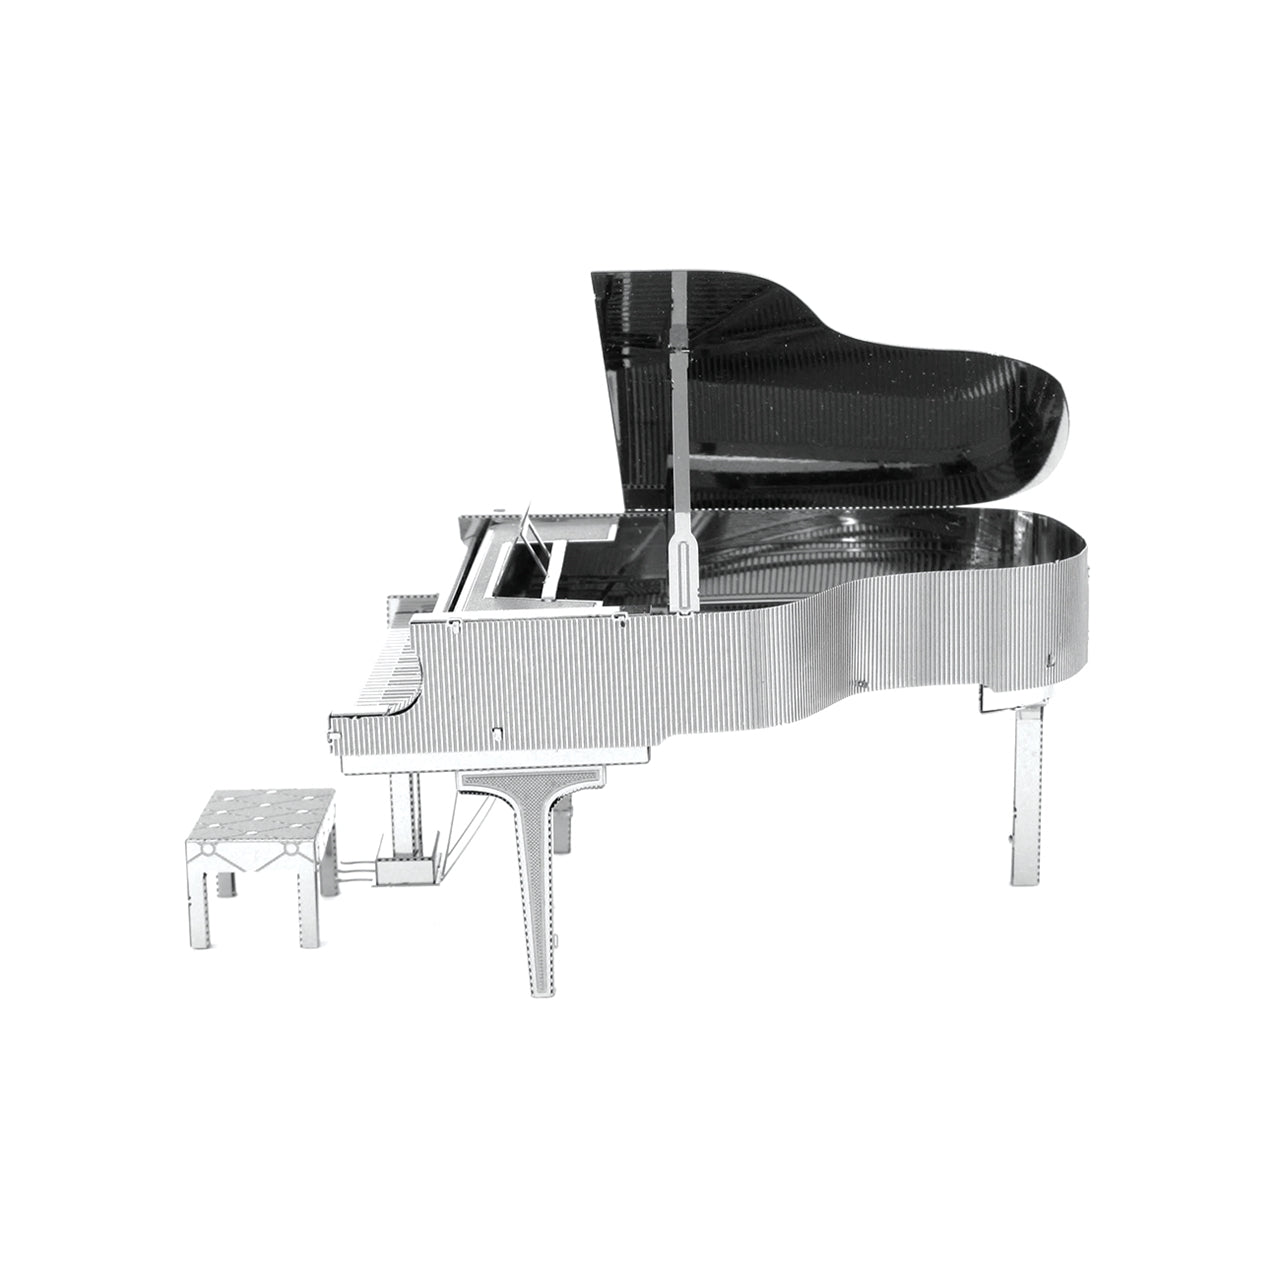 FMW080 ग्रैंड पियानो (निर्माण योग्य) 